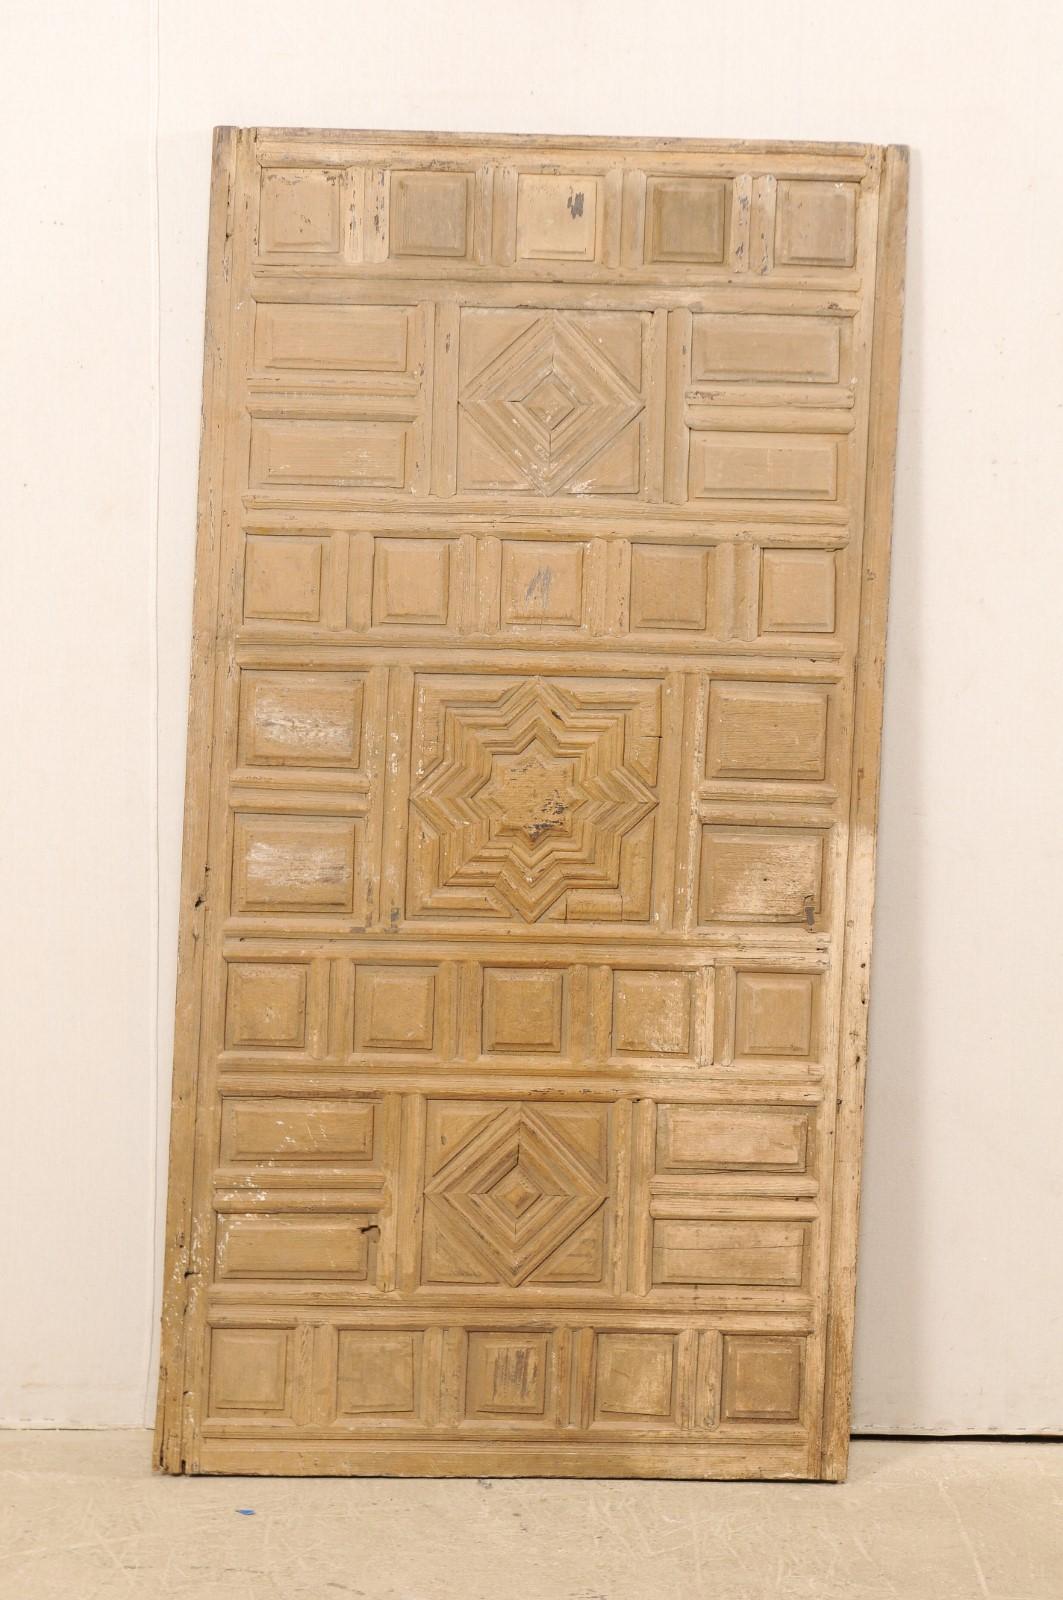 Eine einzelne spanische Wandtafel aus geschnitztem Holz aus dem frühen 19. Jahrhundert. Diese antike Wanddekoration aus Spanien weist eine erhabene Front aus verschiedenen geometrischen Formen auf, in deren Mitte ein Stern mit maurischem Einfluss